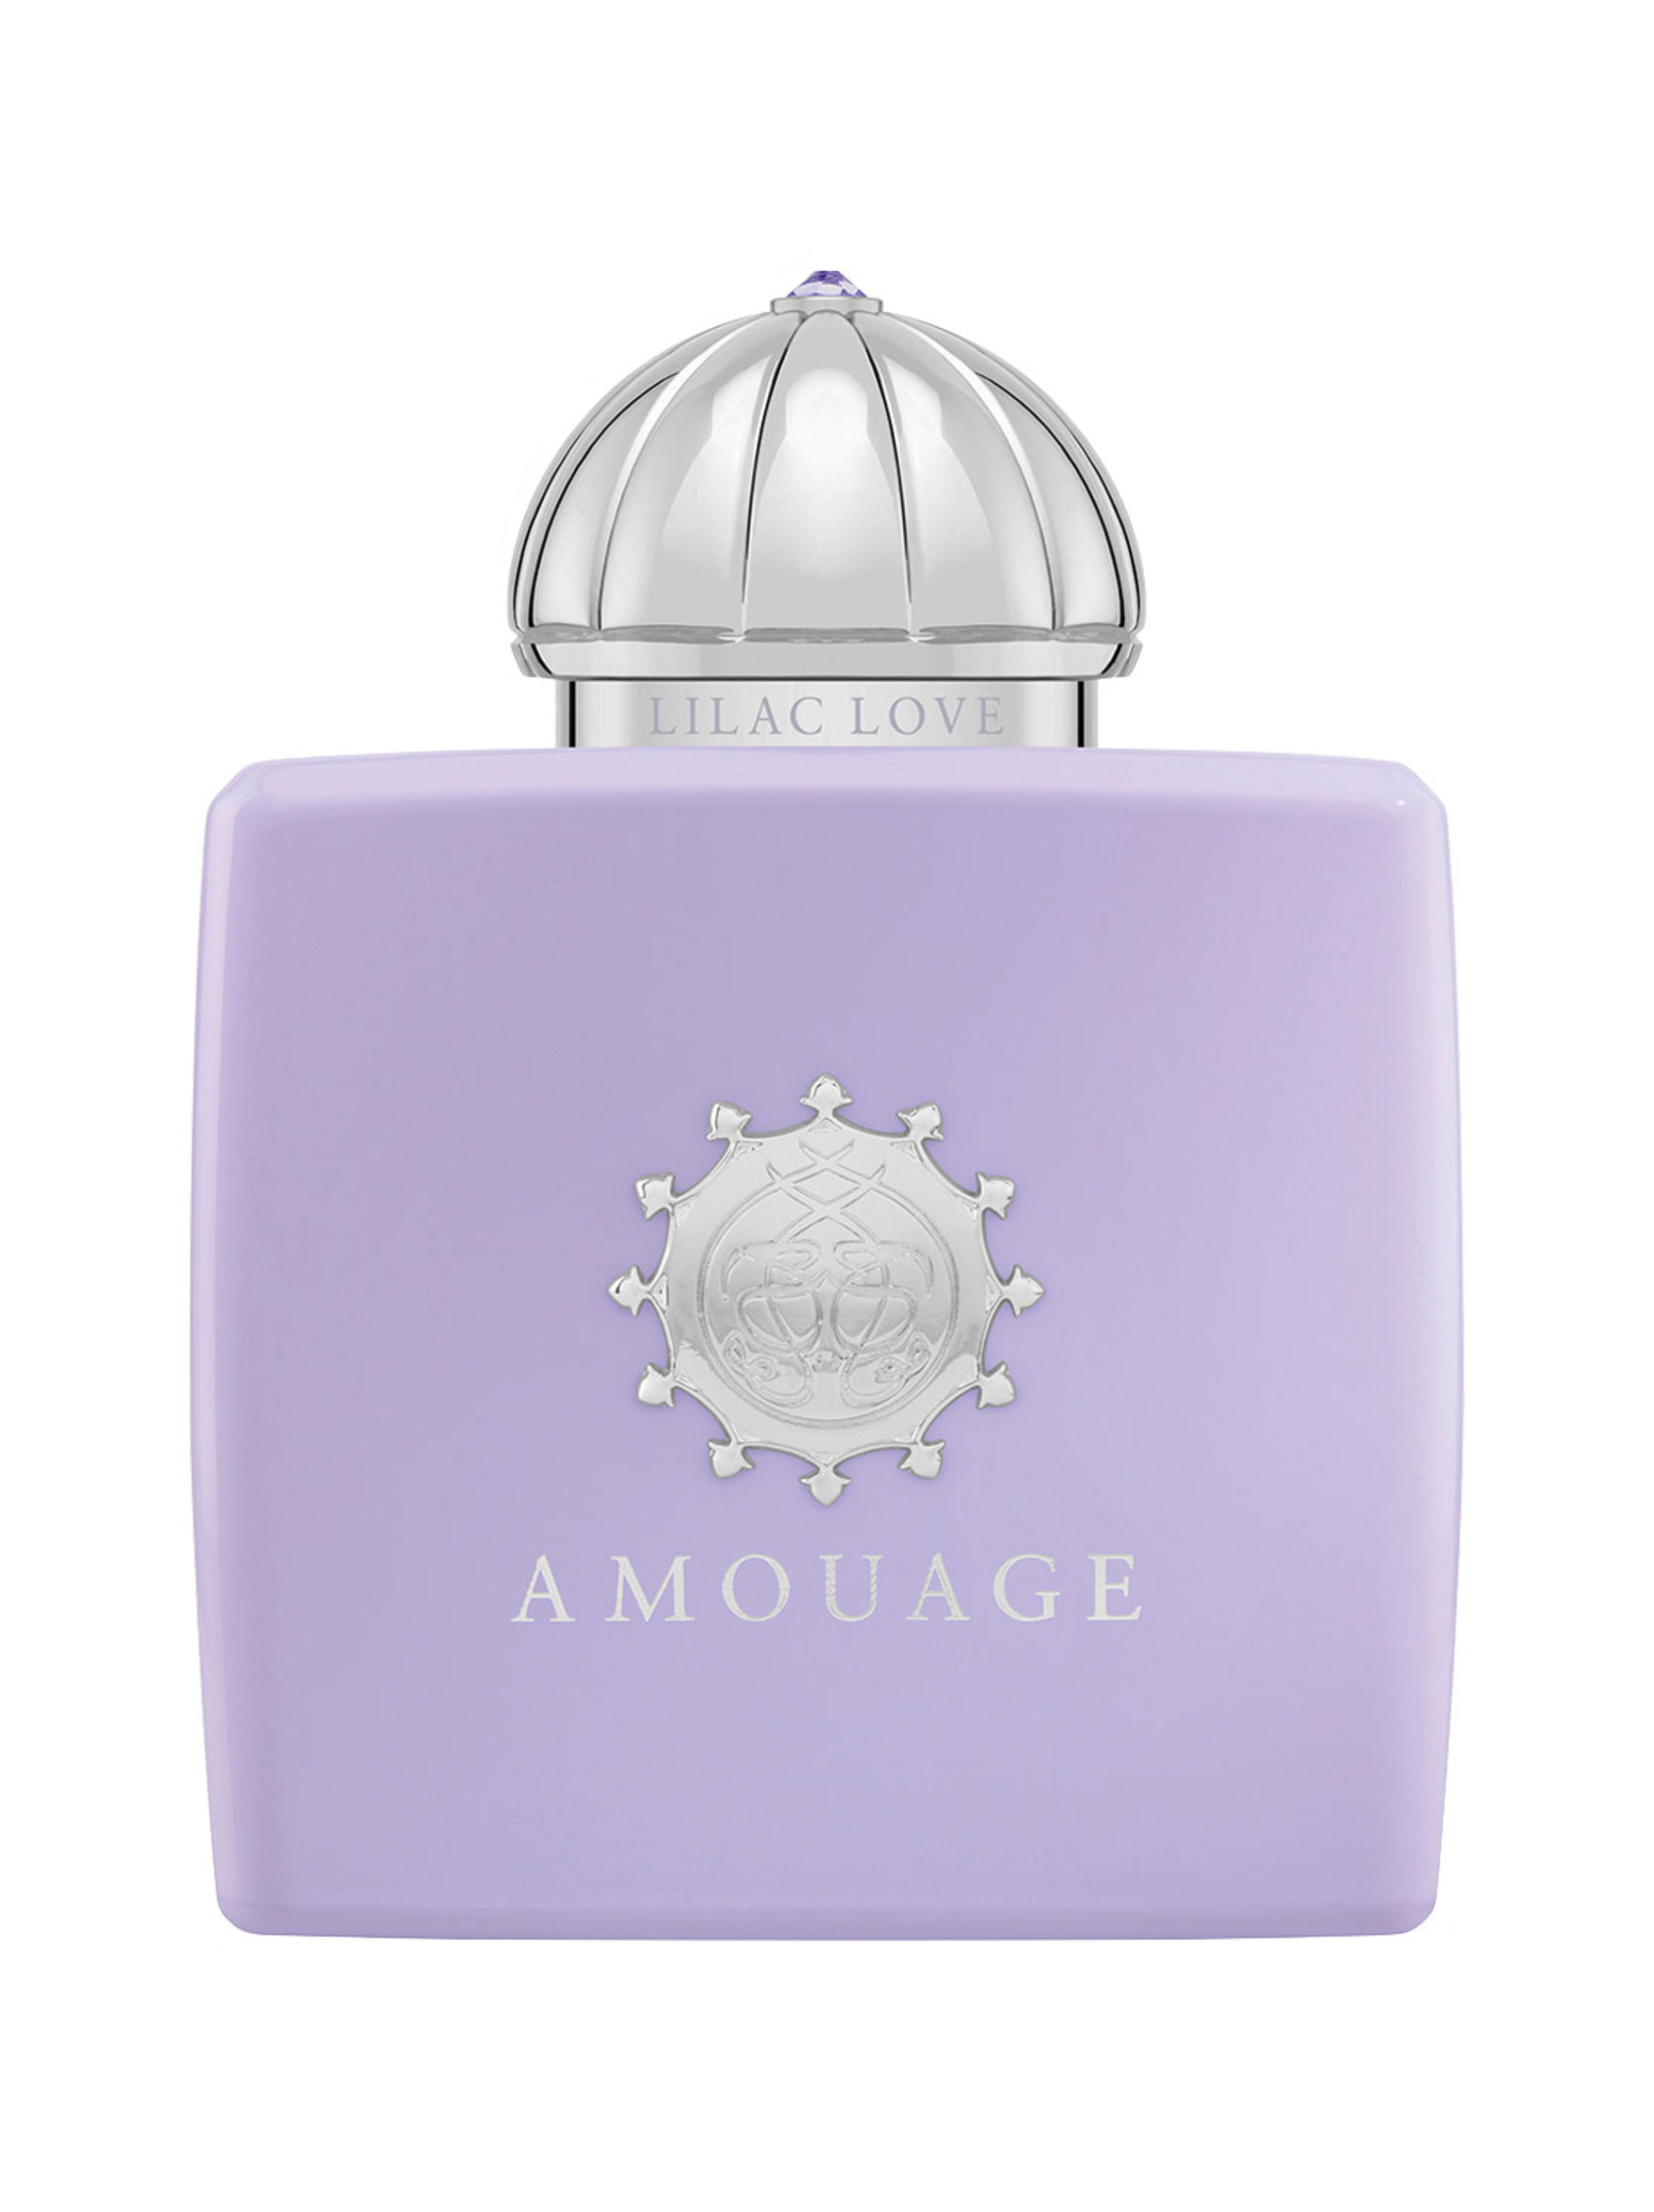 Духи амуаж оригинал. Amouage Lilac Love woman EDP 100 ml. Amouage Lilac Love тестер. Amouage (Tester) "Lilac Love" women. 100 Ml. Amouage Lilac Love.